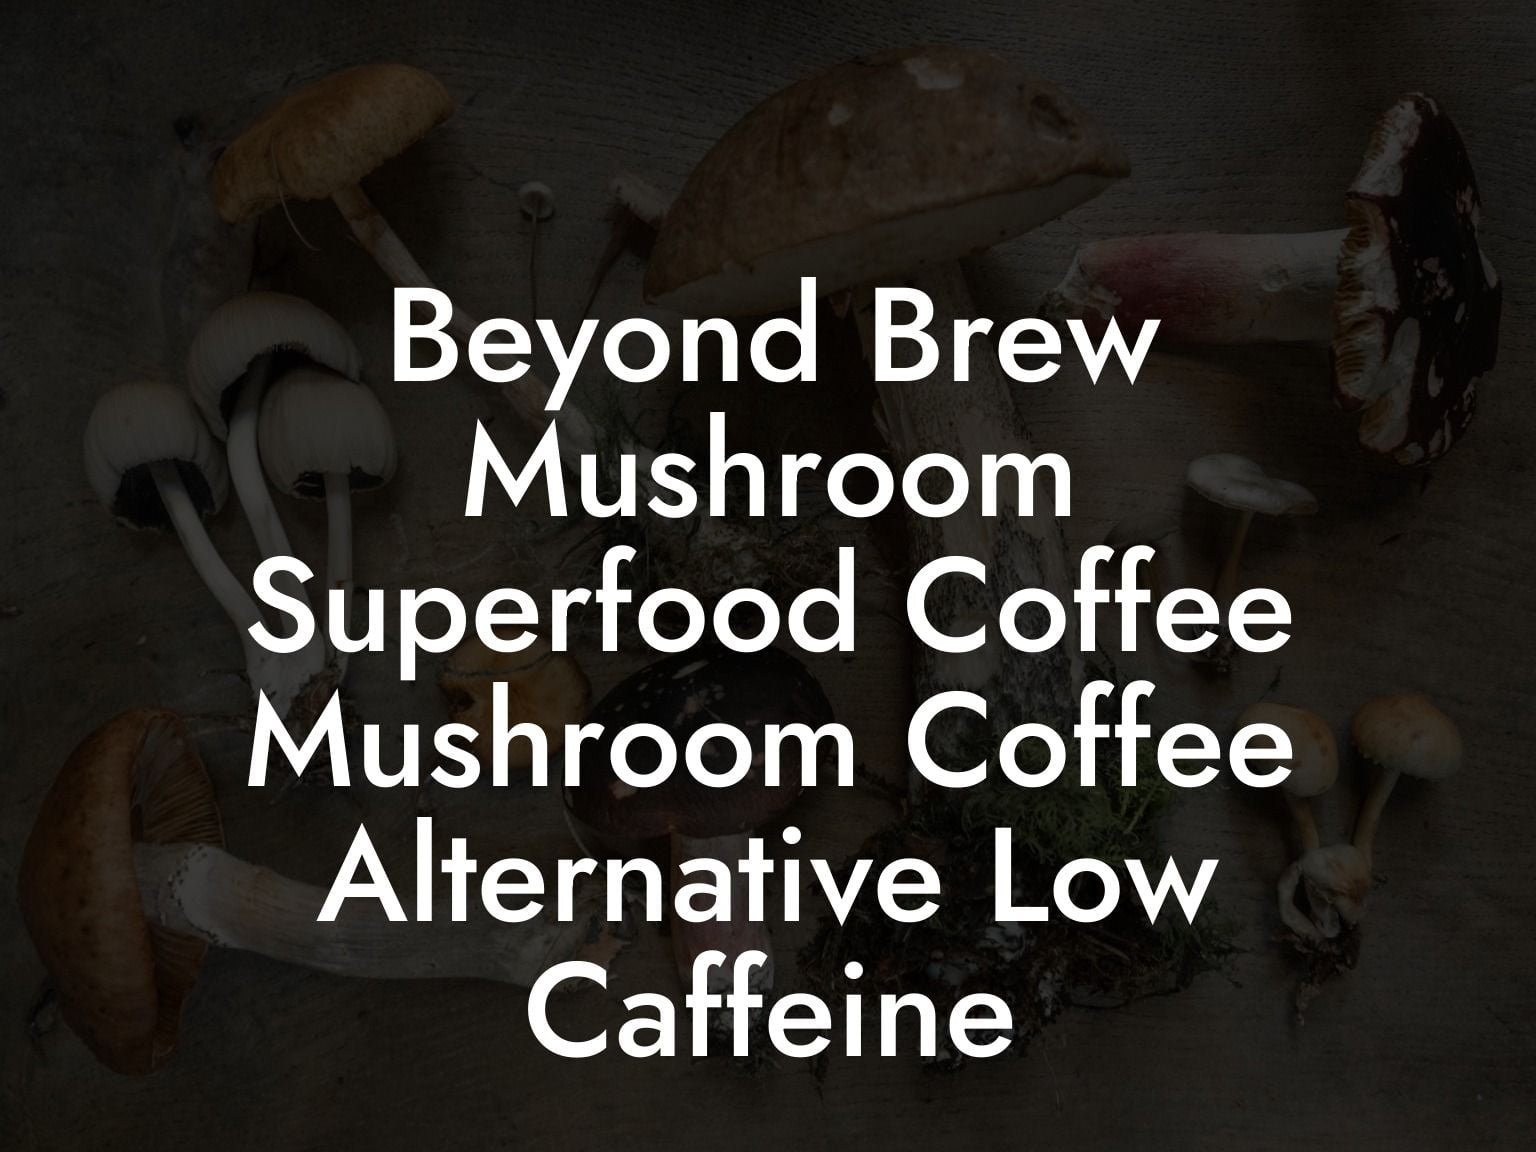 Beyond Brew Mushroom Superfood Coffee Mushroom Coffee Alternative Low Caffeine